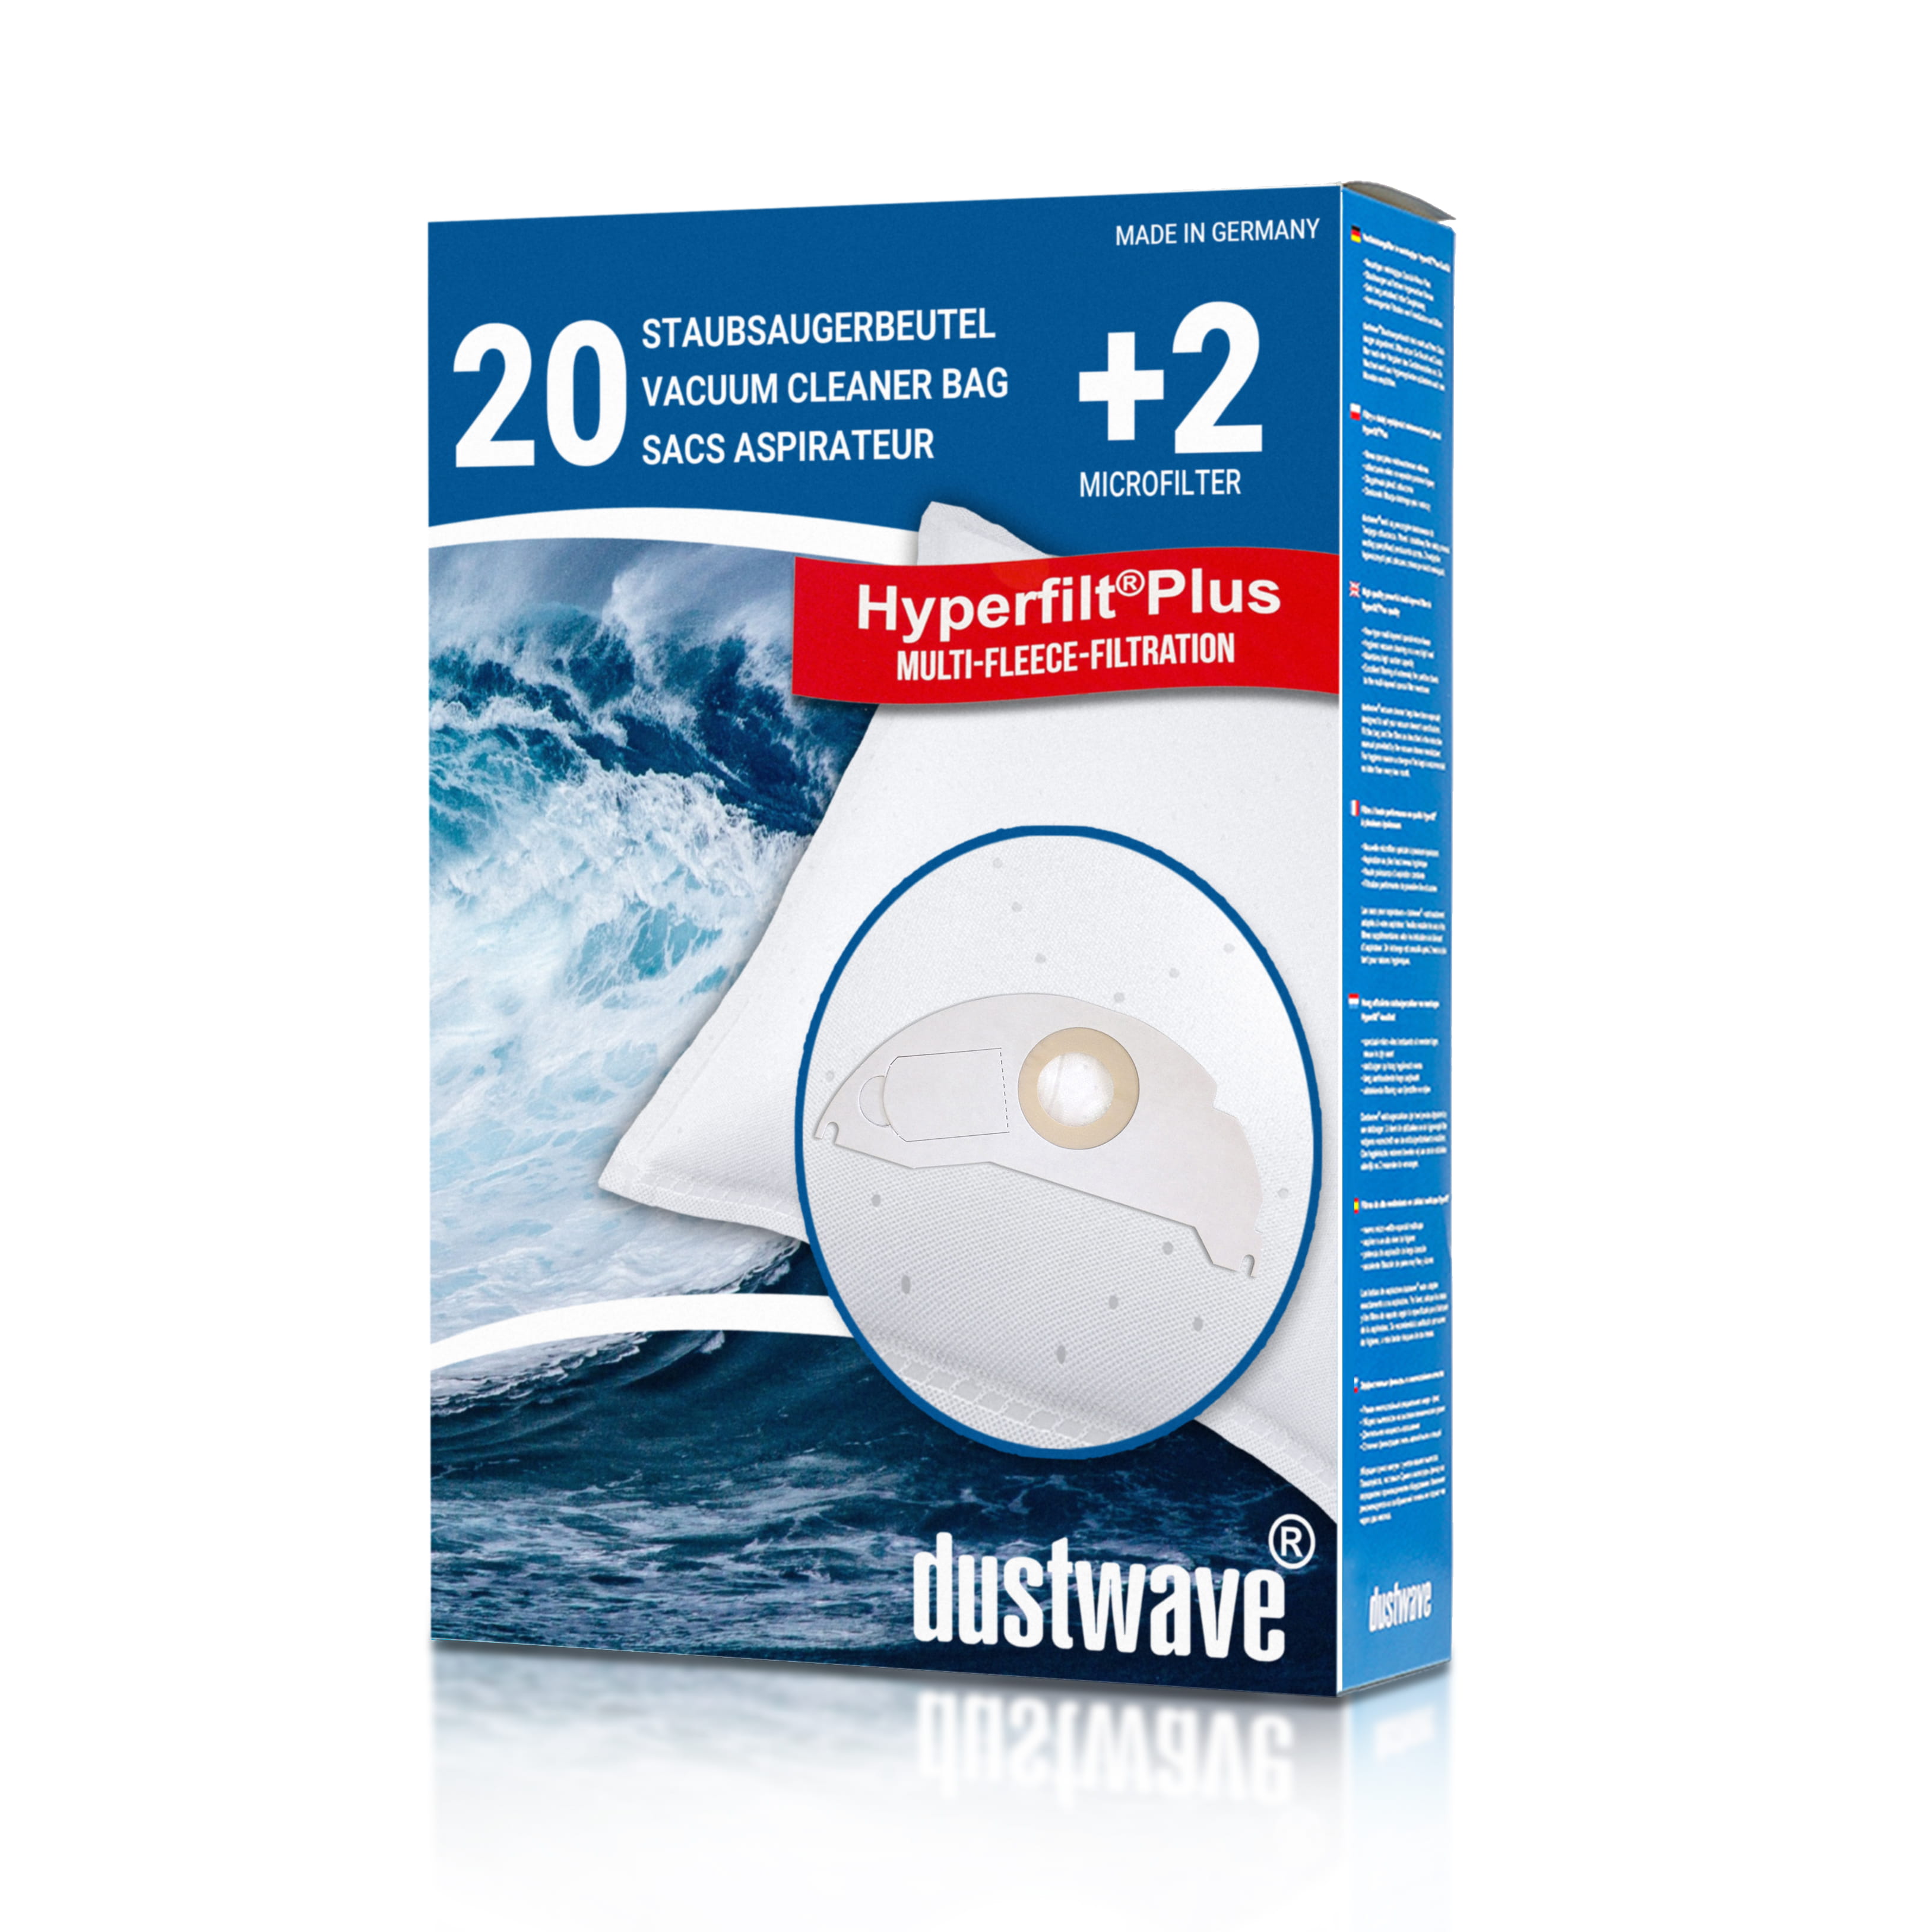 Dustwave® 20 Staubsaugerbeutel für Hoover BD SP5115001 - hocheffizient, mehrlagiges Mikrovlies mit Hygieneverschluss - Made in Germany